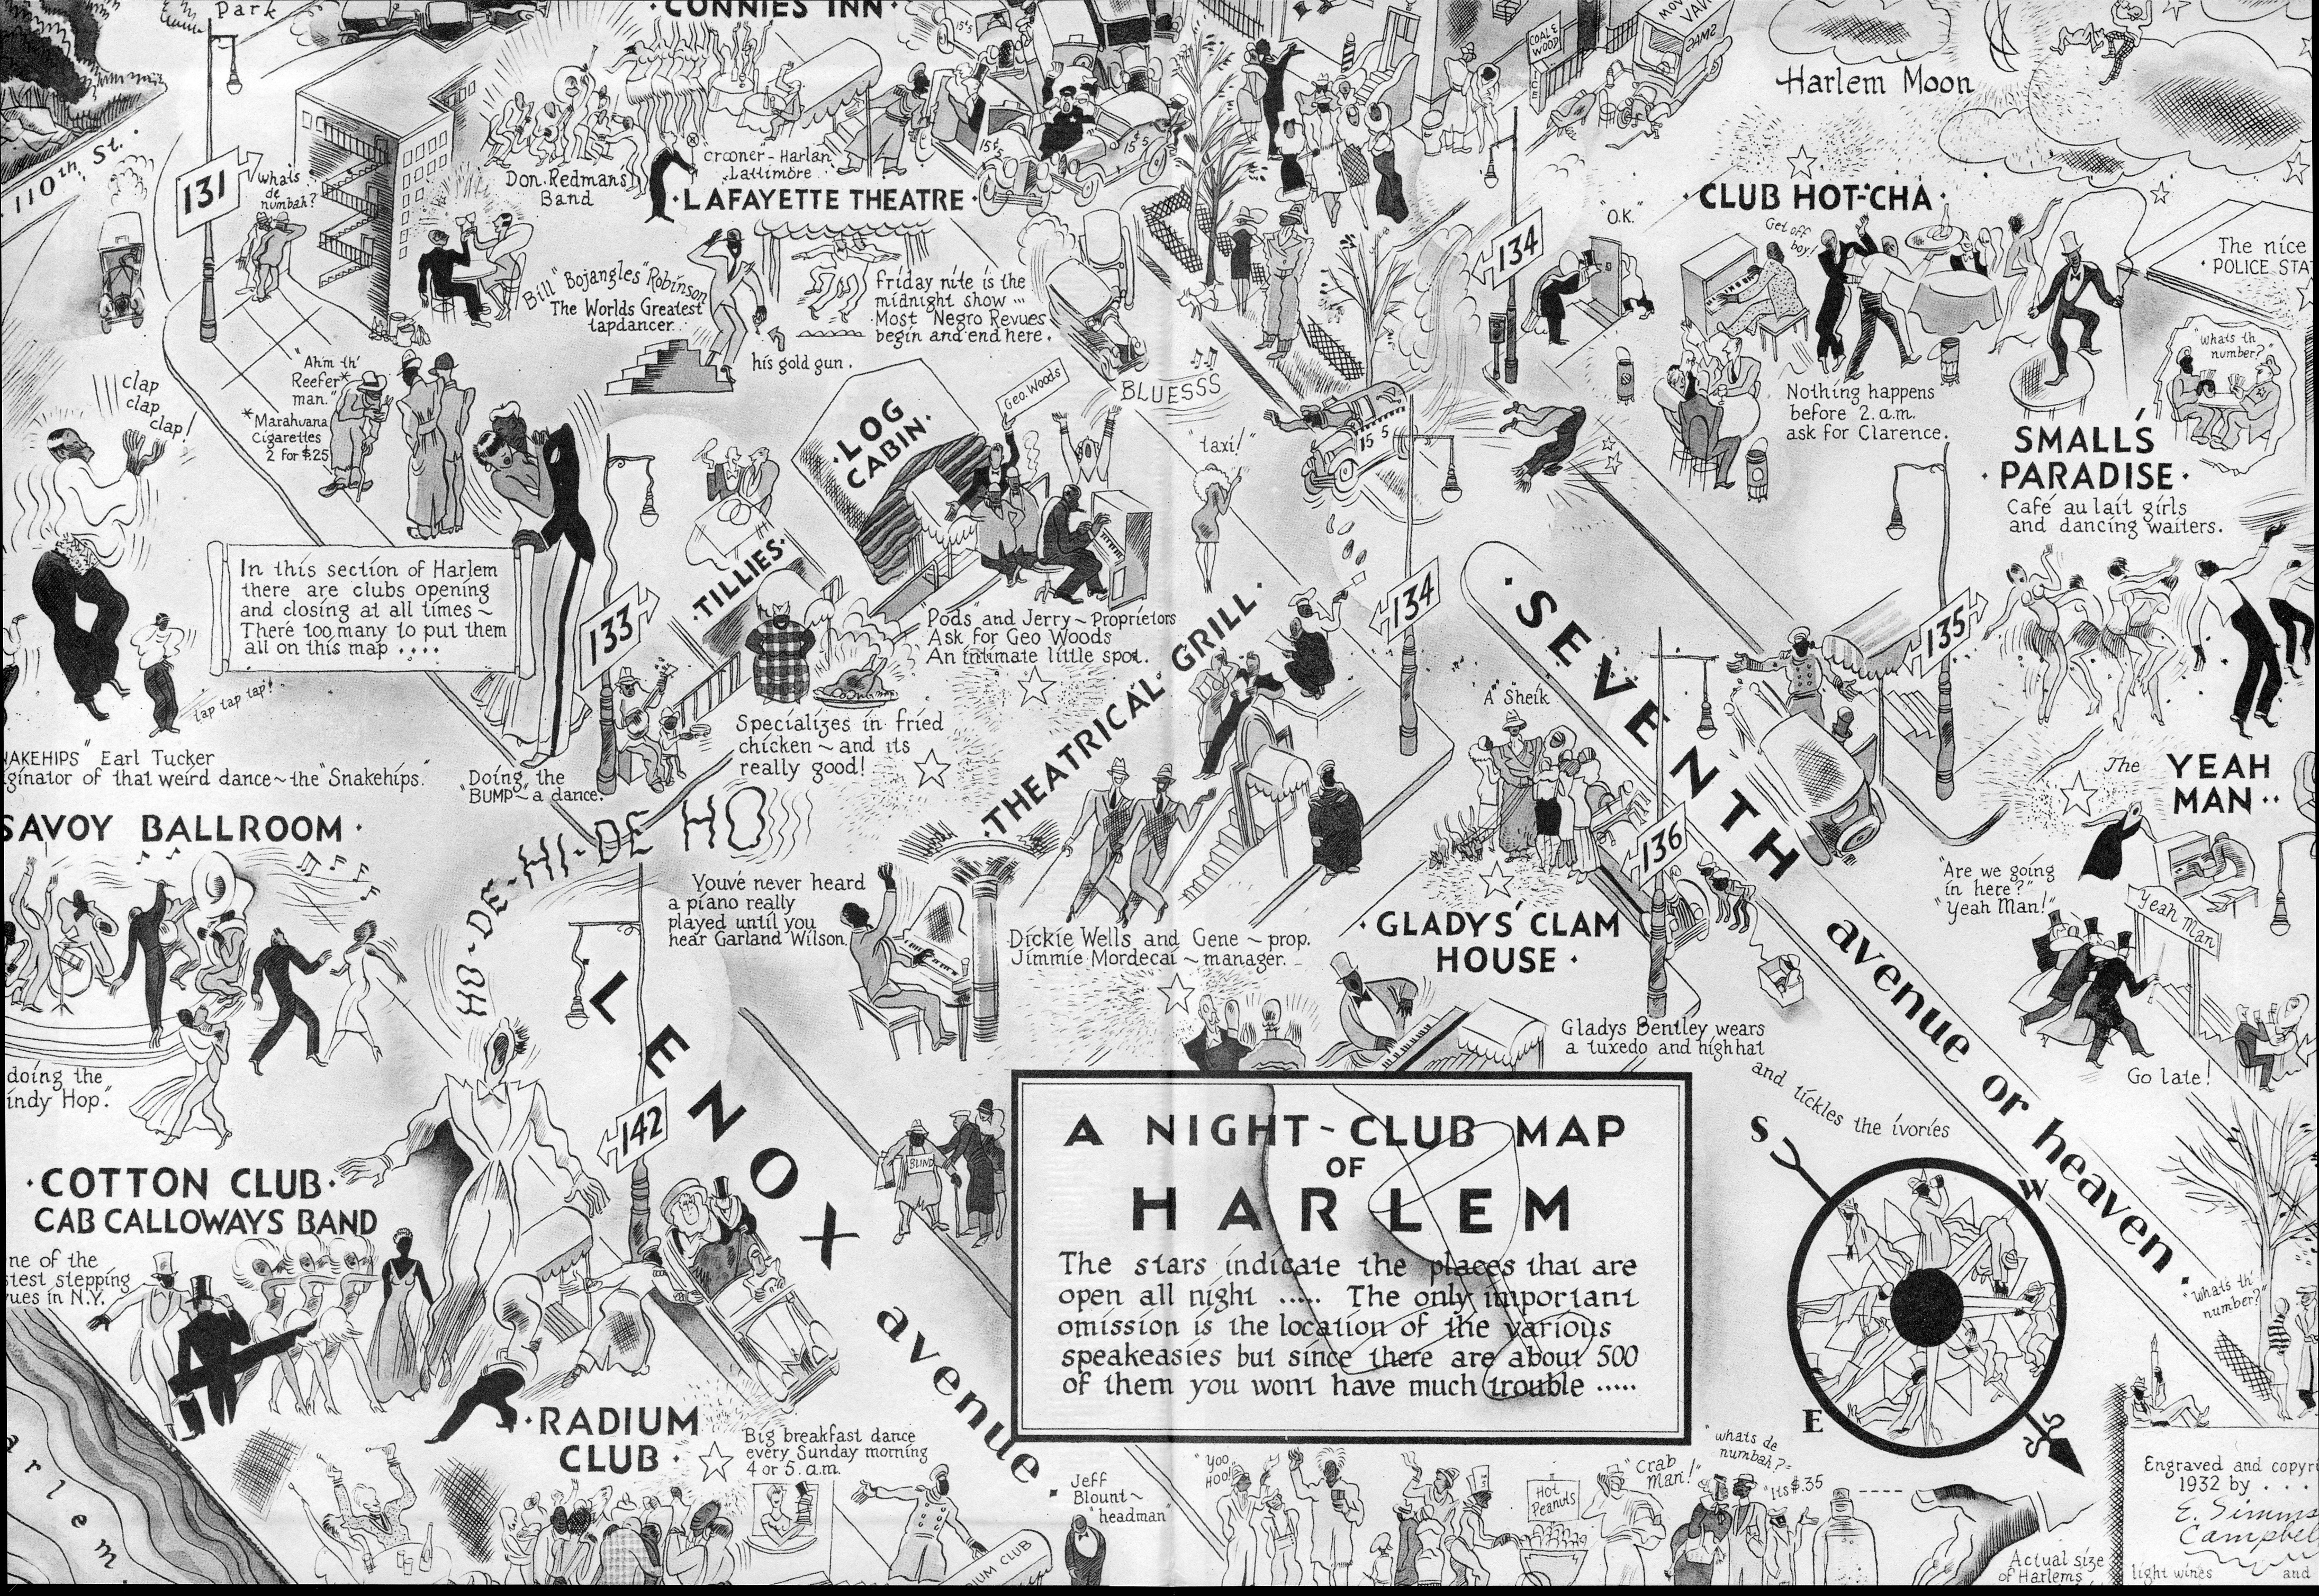 "A Night-Club Map of Harlem" (1932)